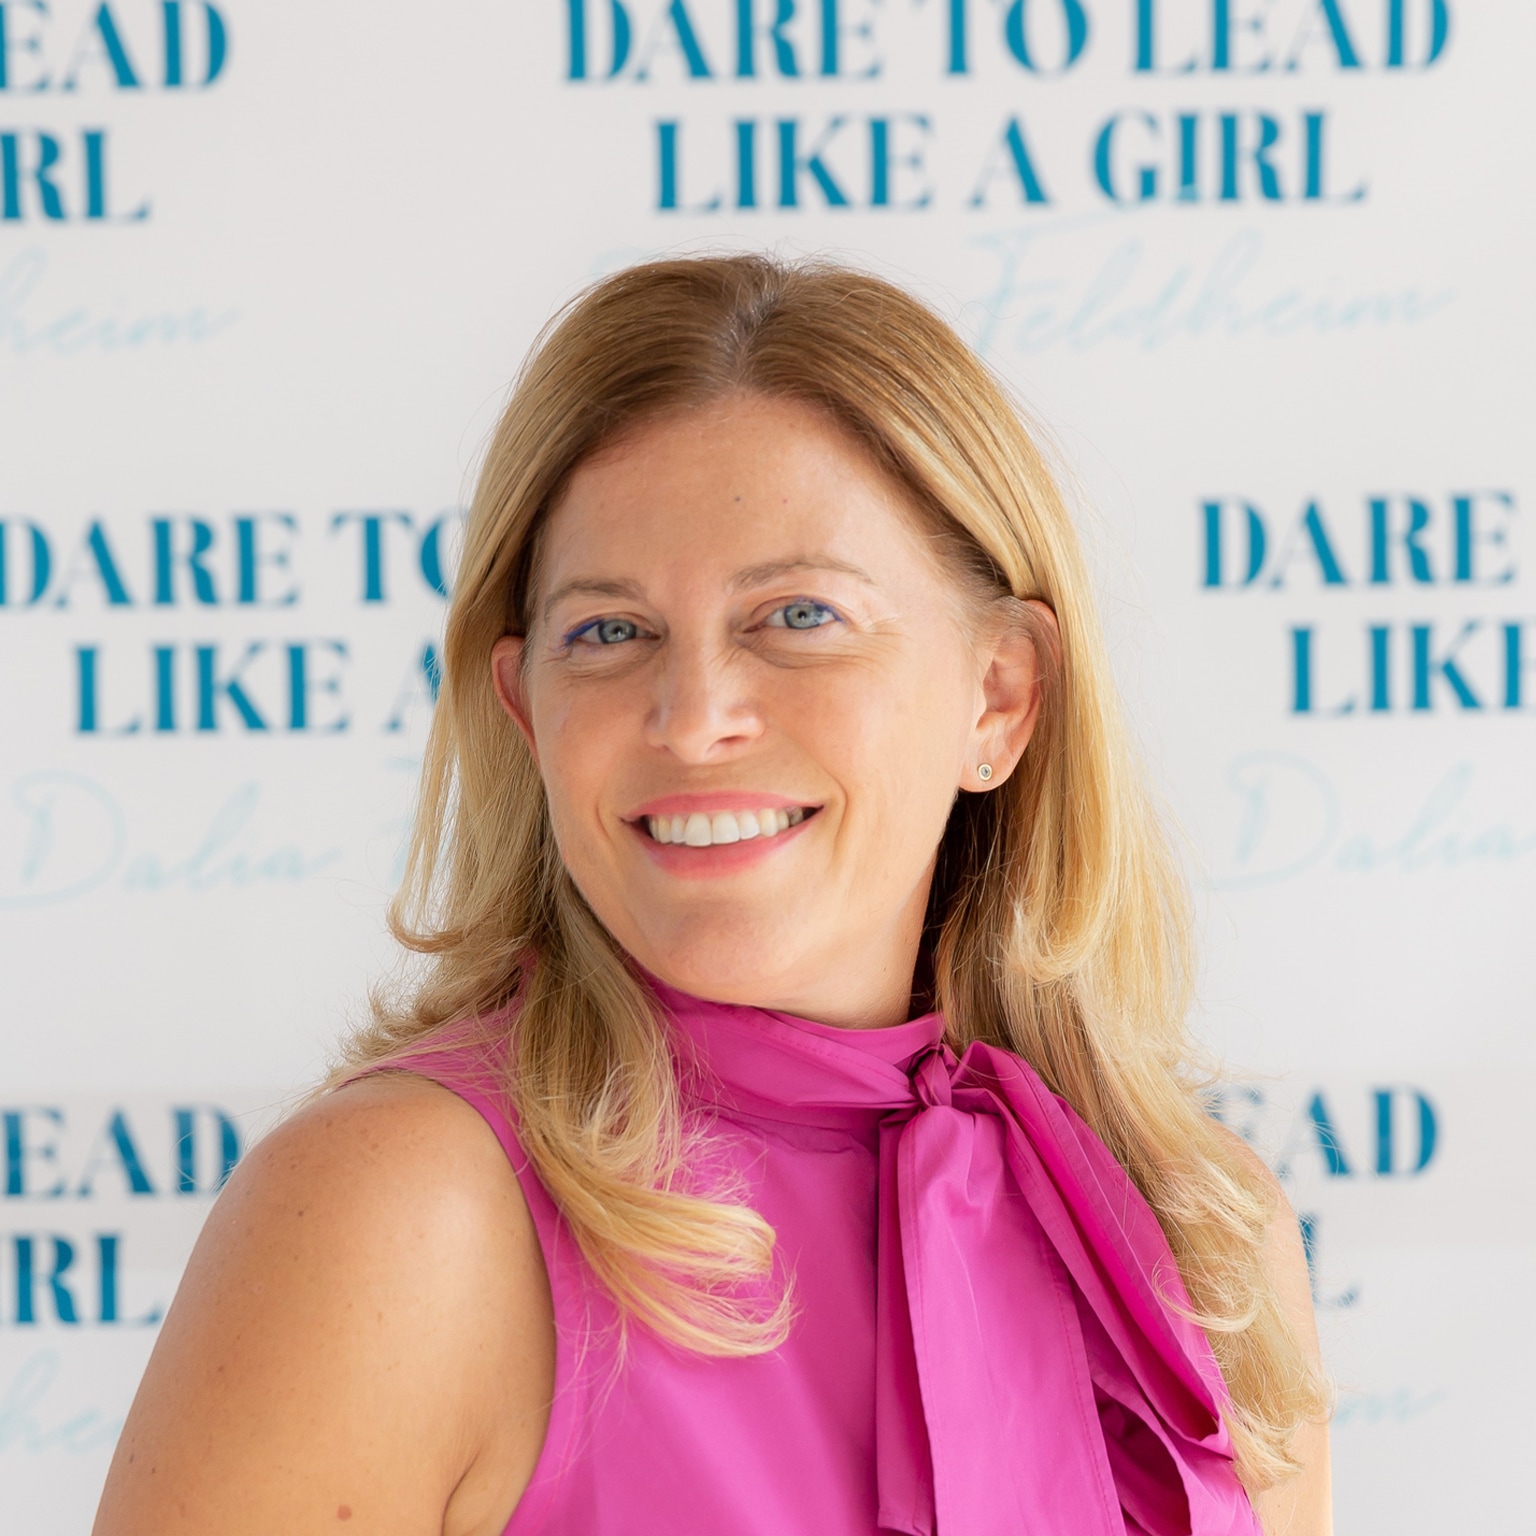 Author Talks: Lead like a girl